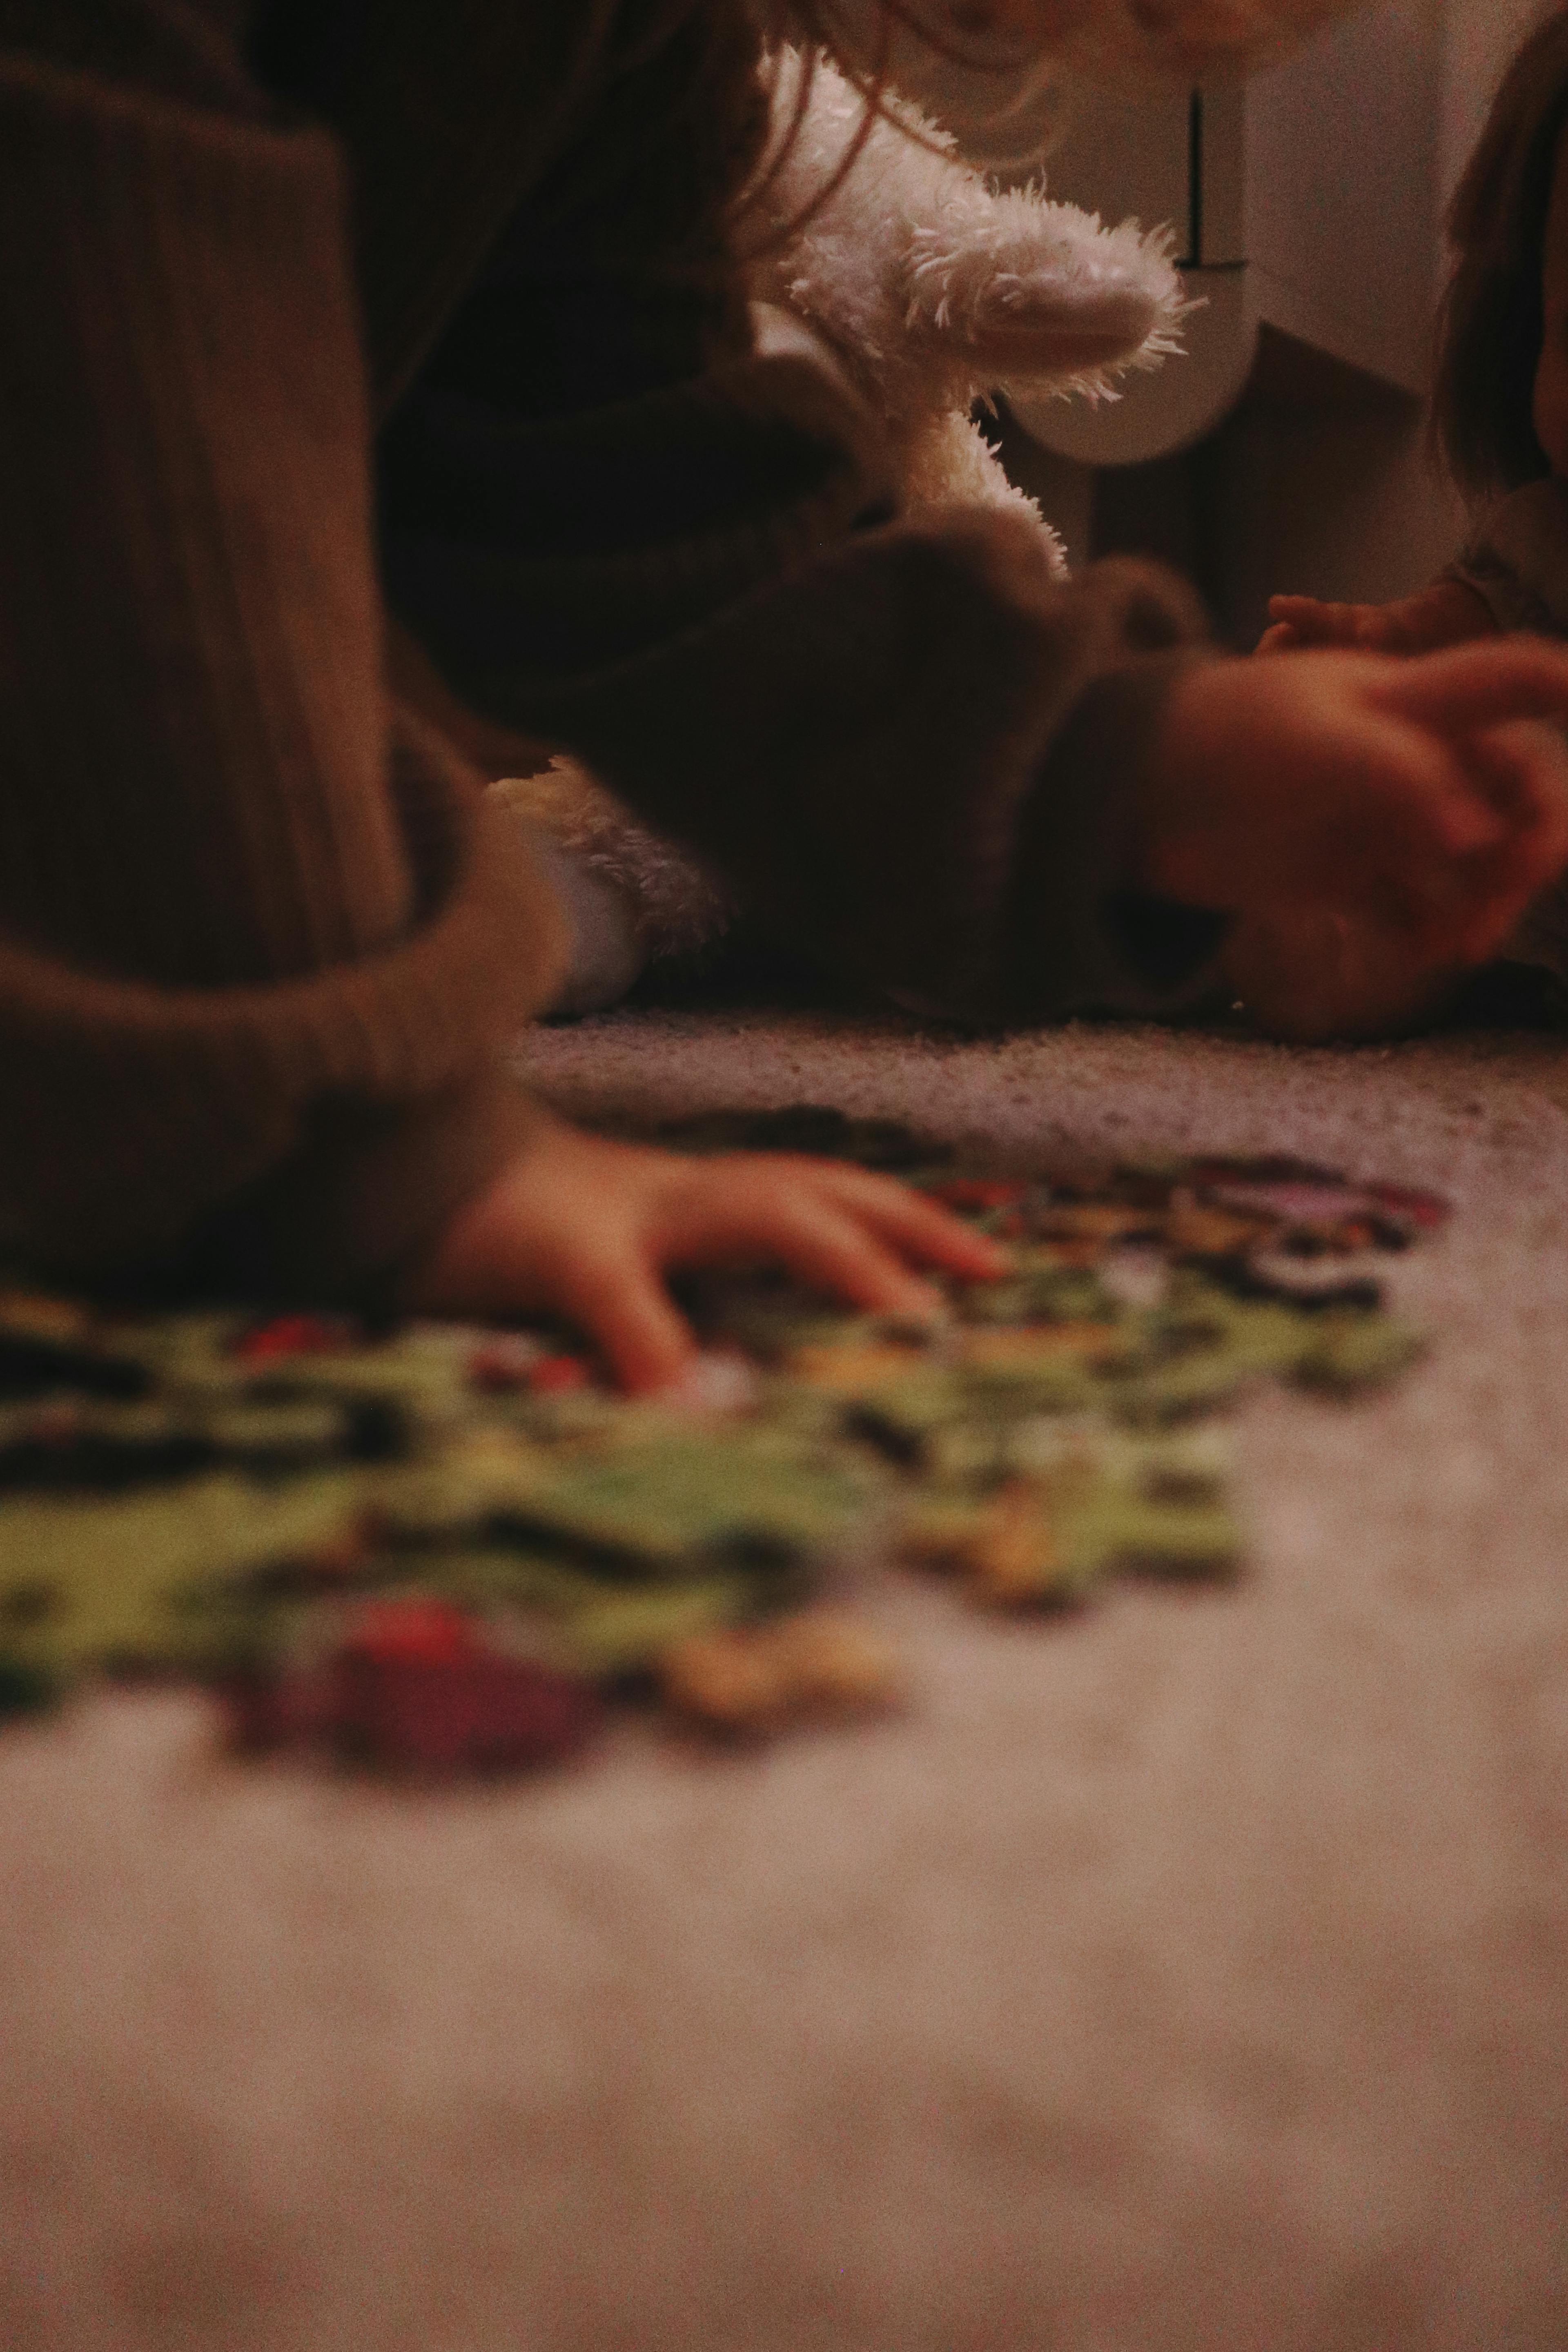 Stimmungsvolles Bild eines Kleinkinds beim Puzzeln.